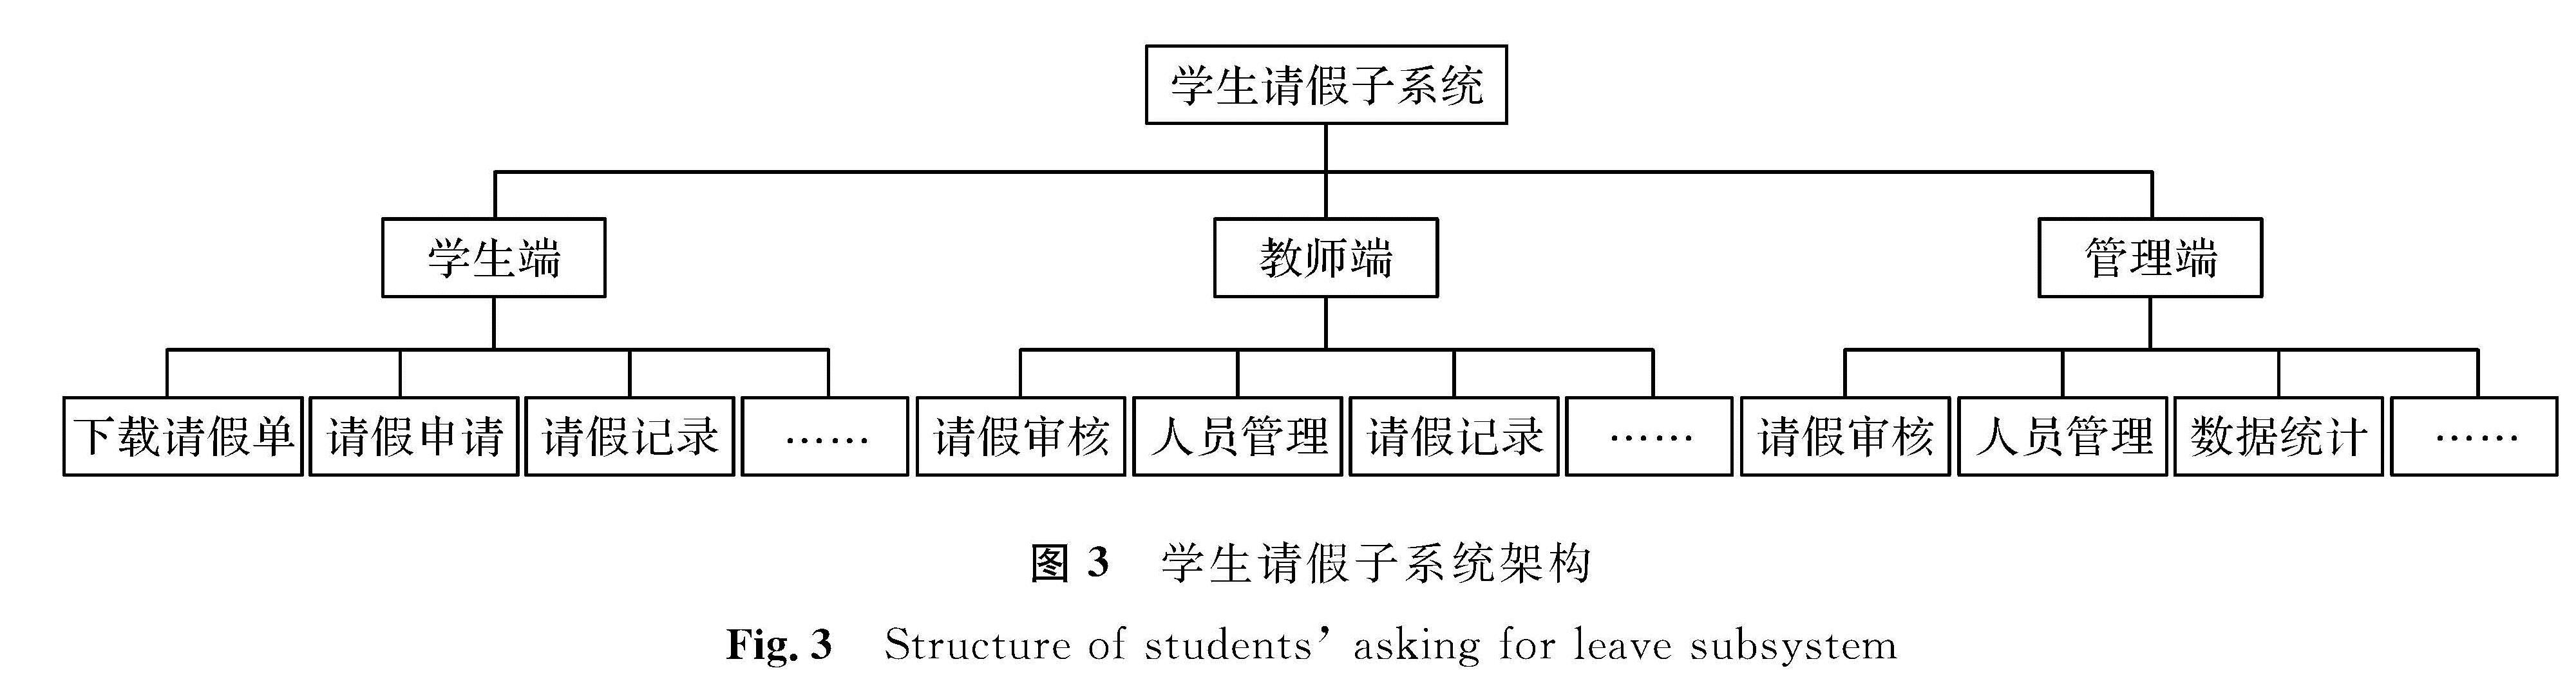 图3 学生请假子系统架构<br/>Fig.3 Structure of students' asking for leave subsystem